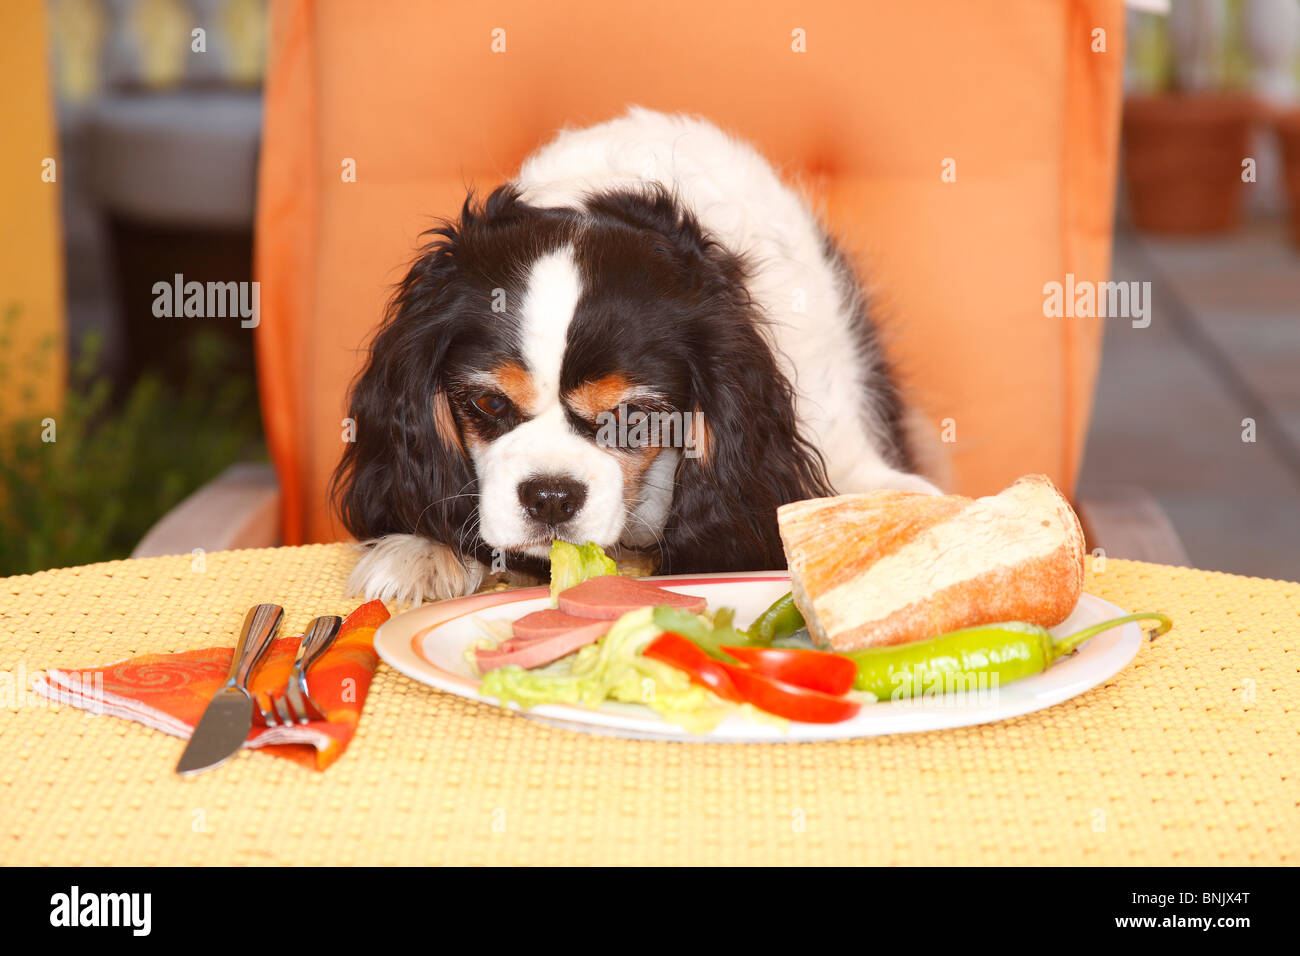 Cavalier King Charles Spaniel, Tricolor, Blick auf Teller mit Essen / Wurst, Brot, schlechte Angewohnheit Stockfoto